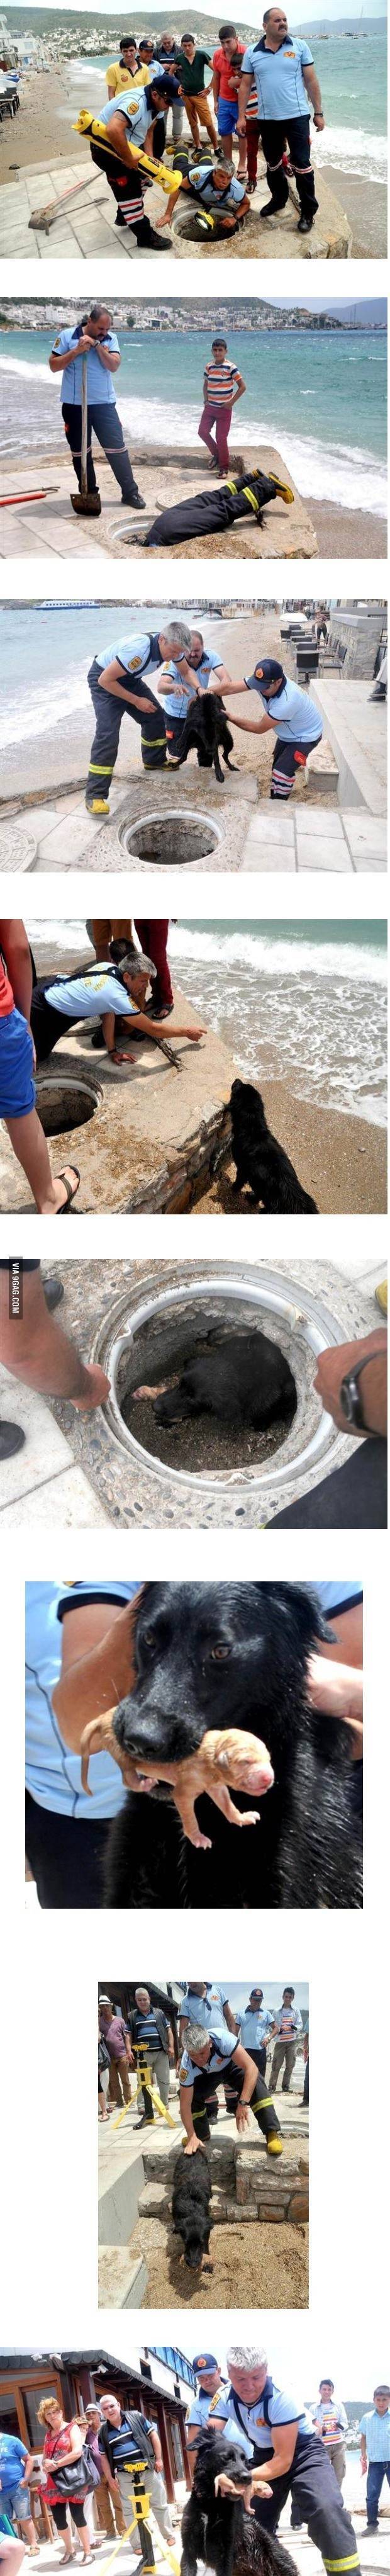 배수구에 빠진 갓태어난 강아지를 구조대원들이 못들어가자 구조견에게 지시해서 꺼내는 장면 | 인스티즈